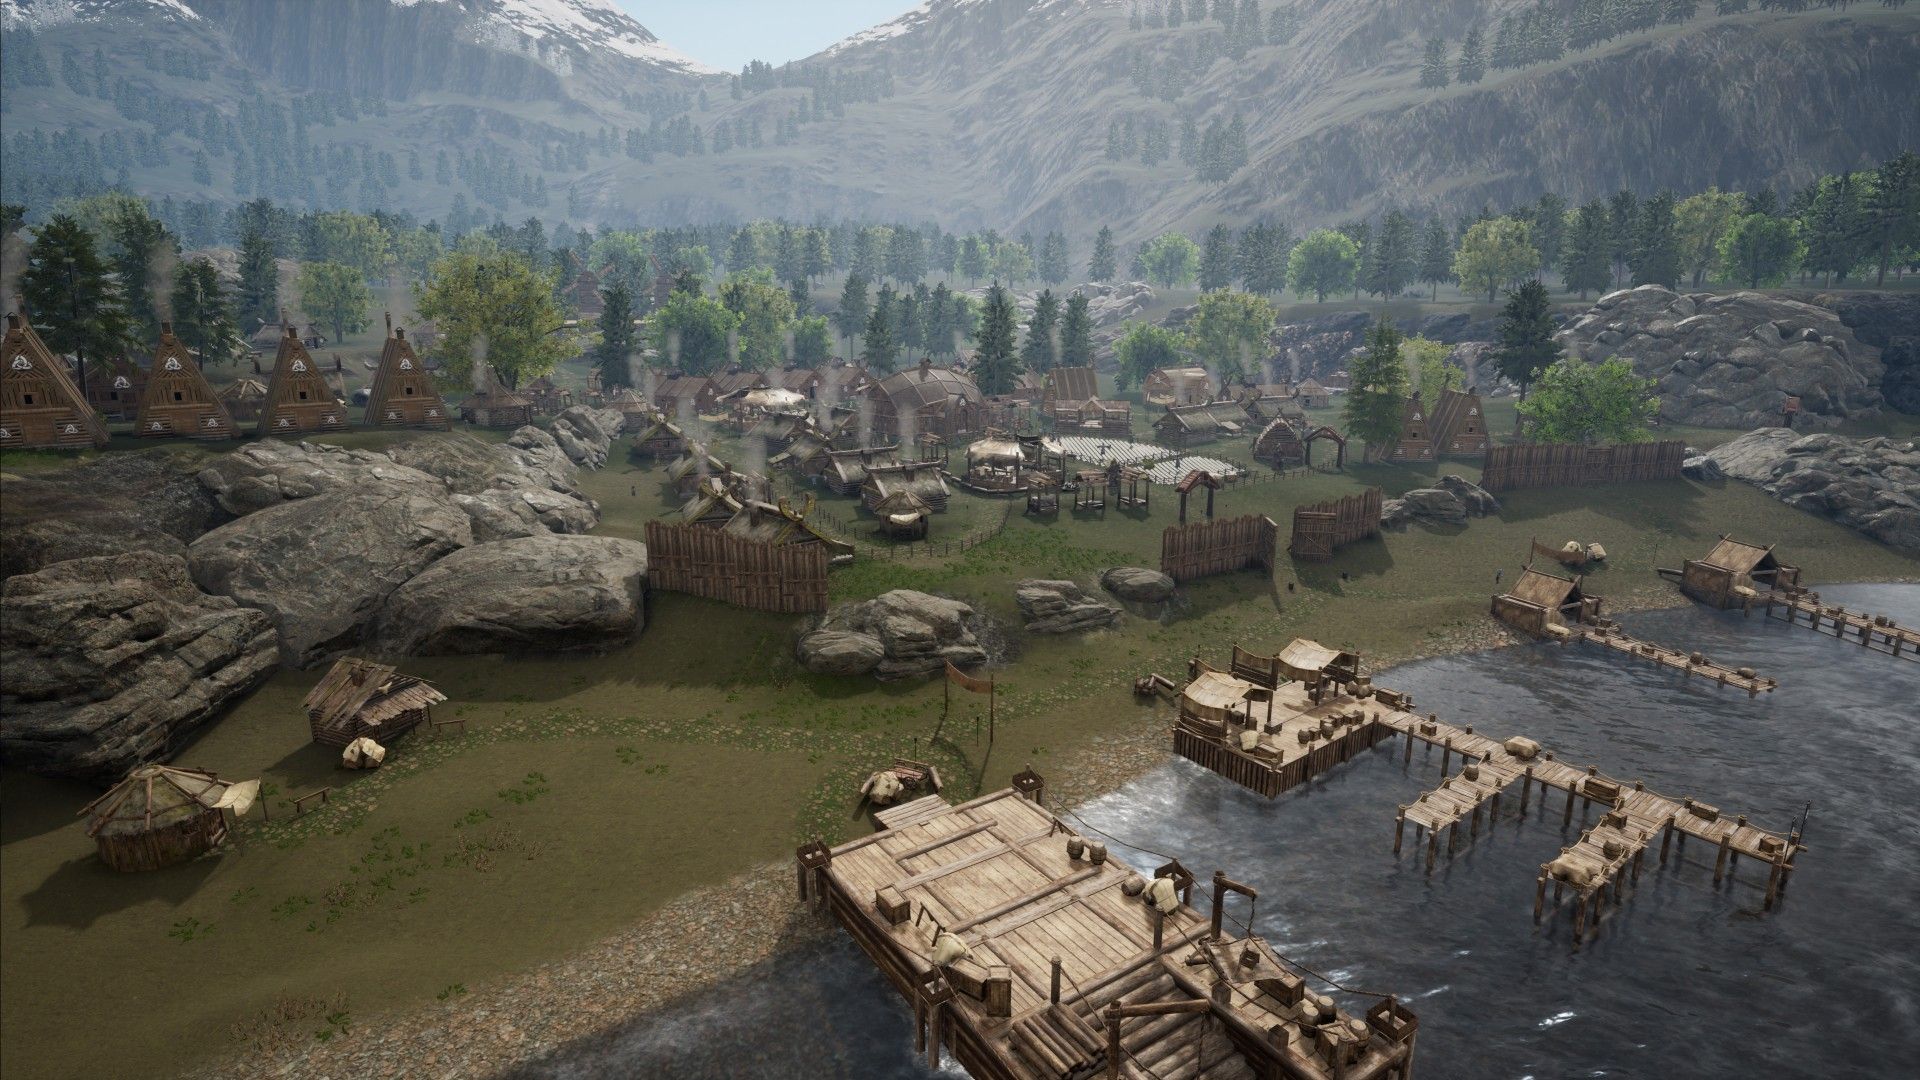 Vista aérea da Terra dos Vikings mostrando uma vila com casas e píeres que se estendem até a água.